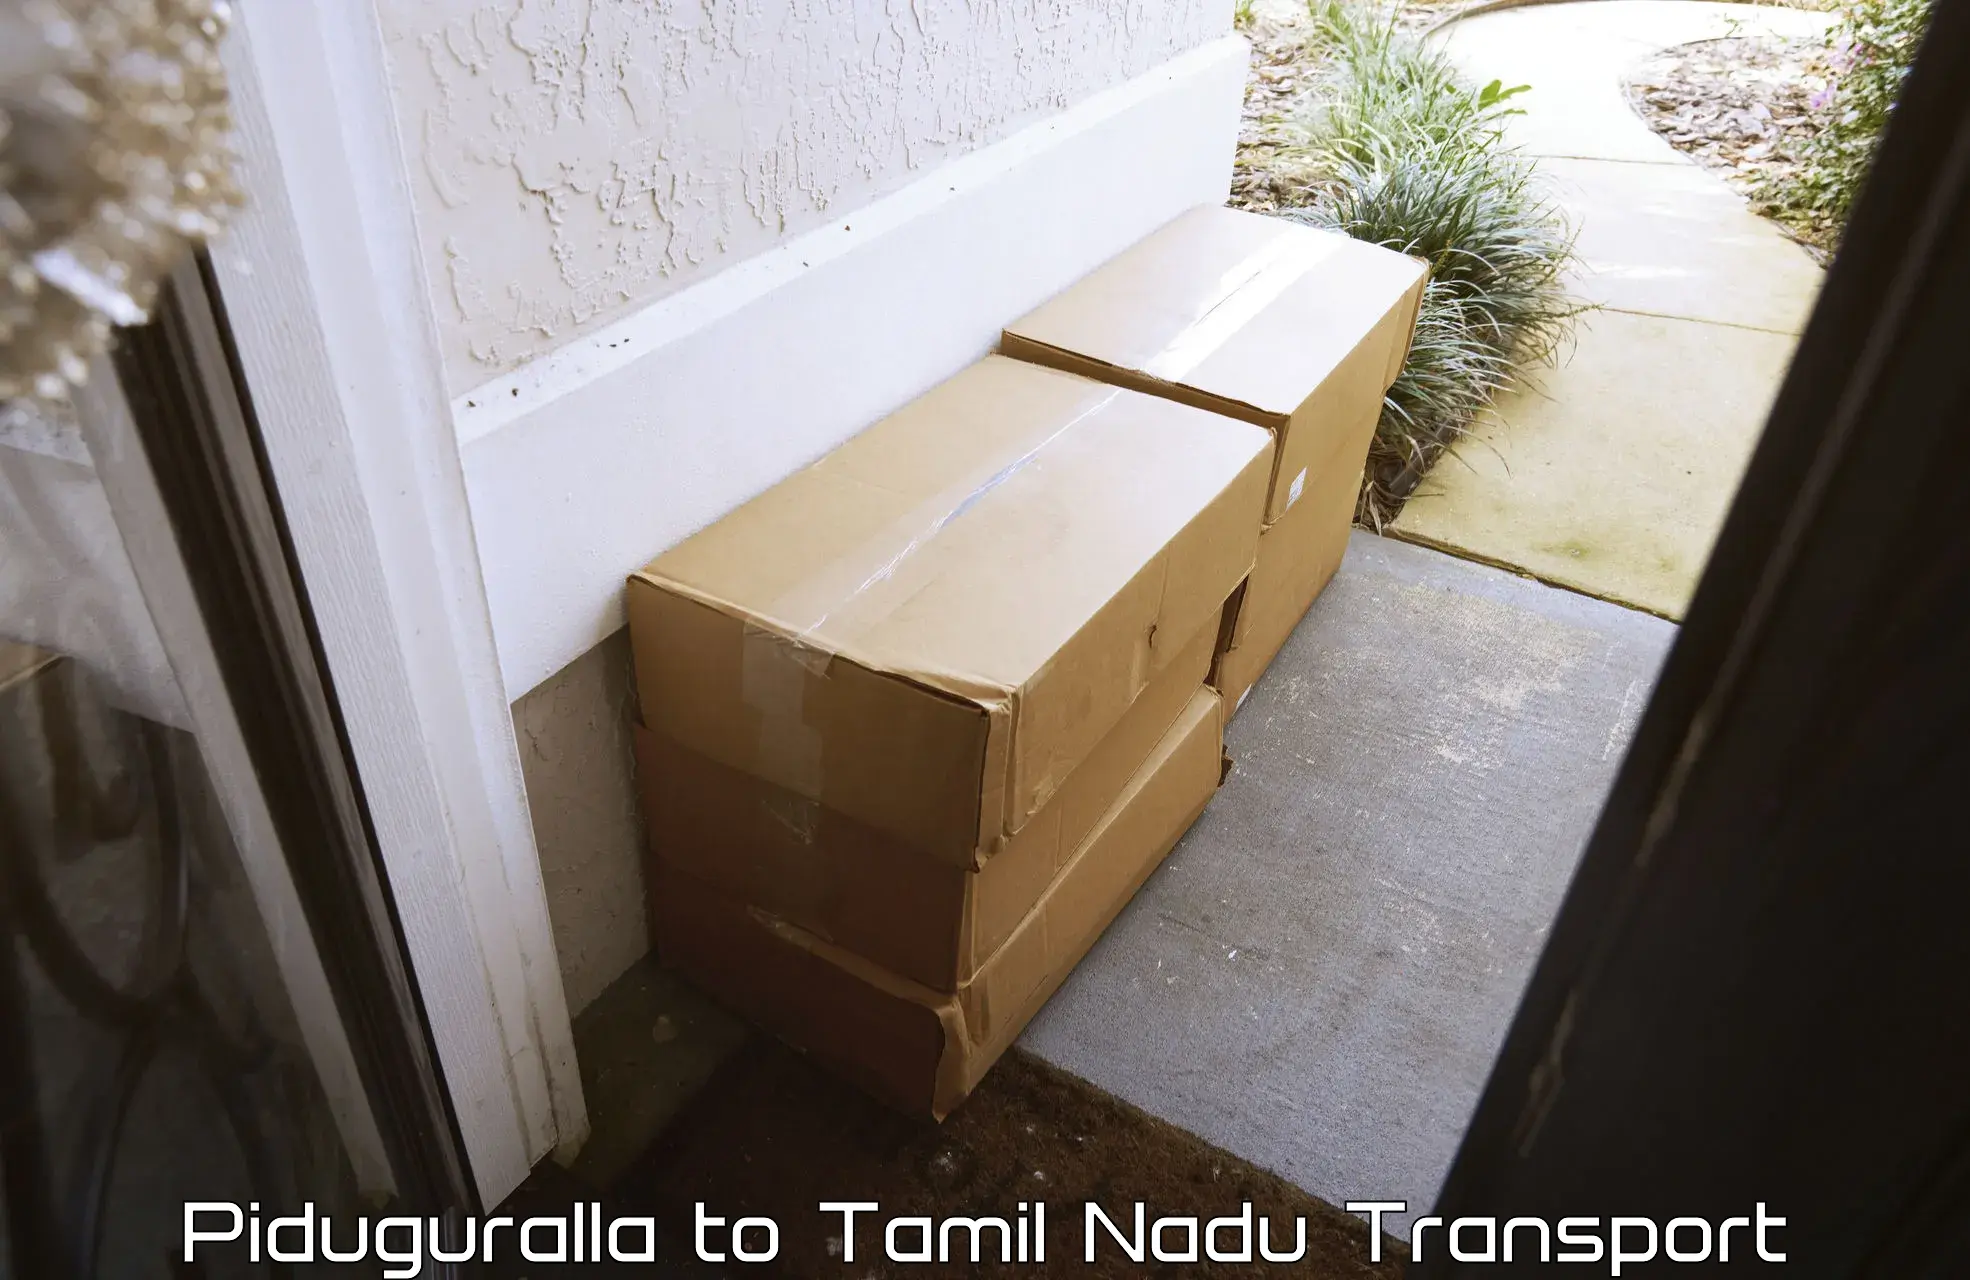 Online transport booking Piduguralla to Tamil Nadu